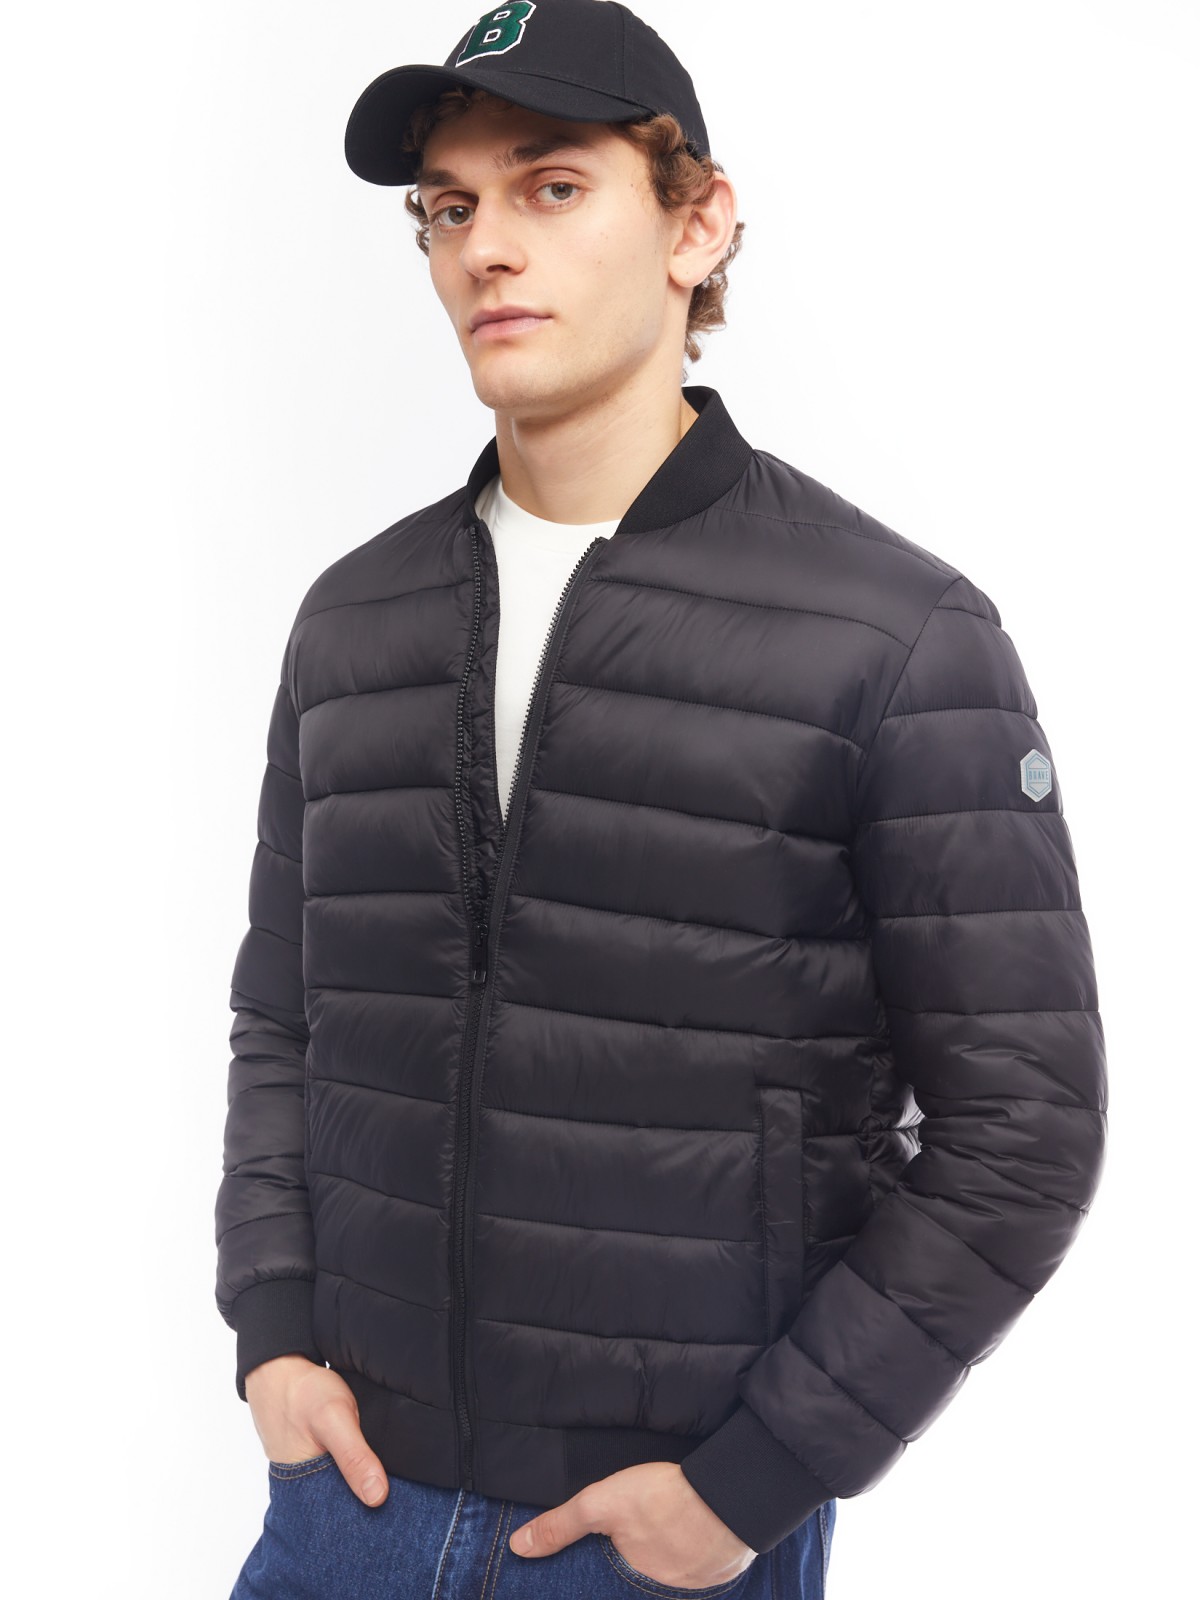 Лёгкая утеплённая куртка-бомбер с воротником-стойкой zolla 014125102094, цвет черный, размер S - фото 3